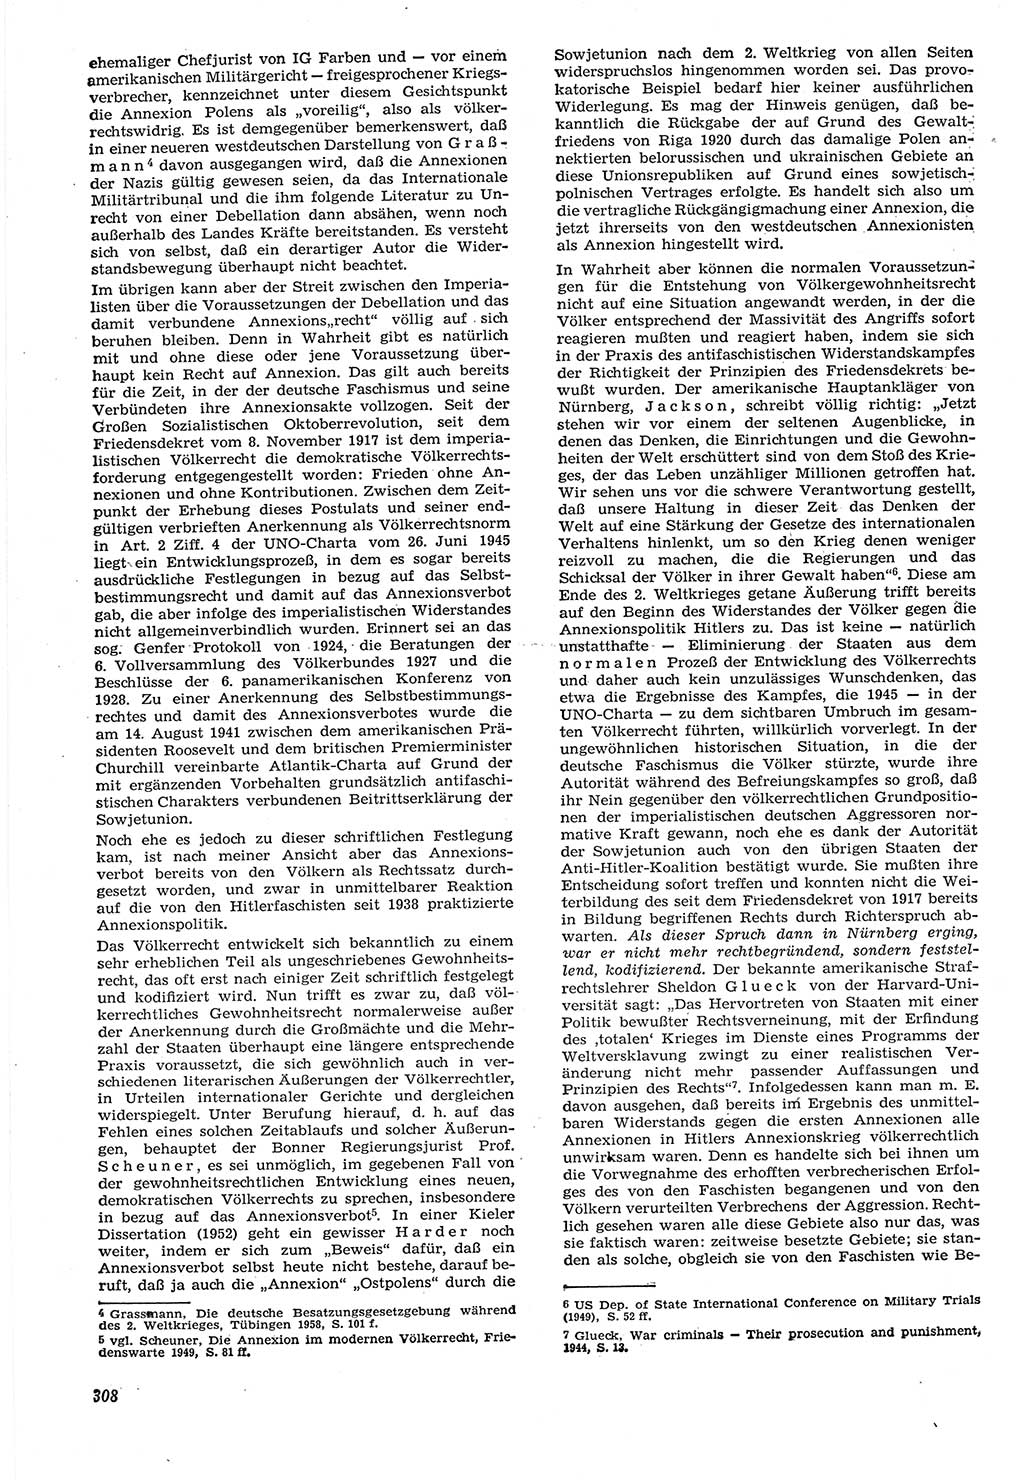 Neue Justiz (NJ), Zeitschrift für Recht und Rechtswissenschaft [Deutsche Demokratische Republik (DDR)], 15. Jahrgang 1961, Seite 308 (NJ DDR 1961, S. 308)